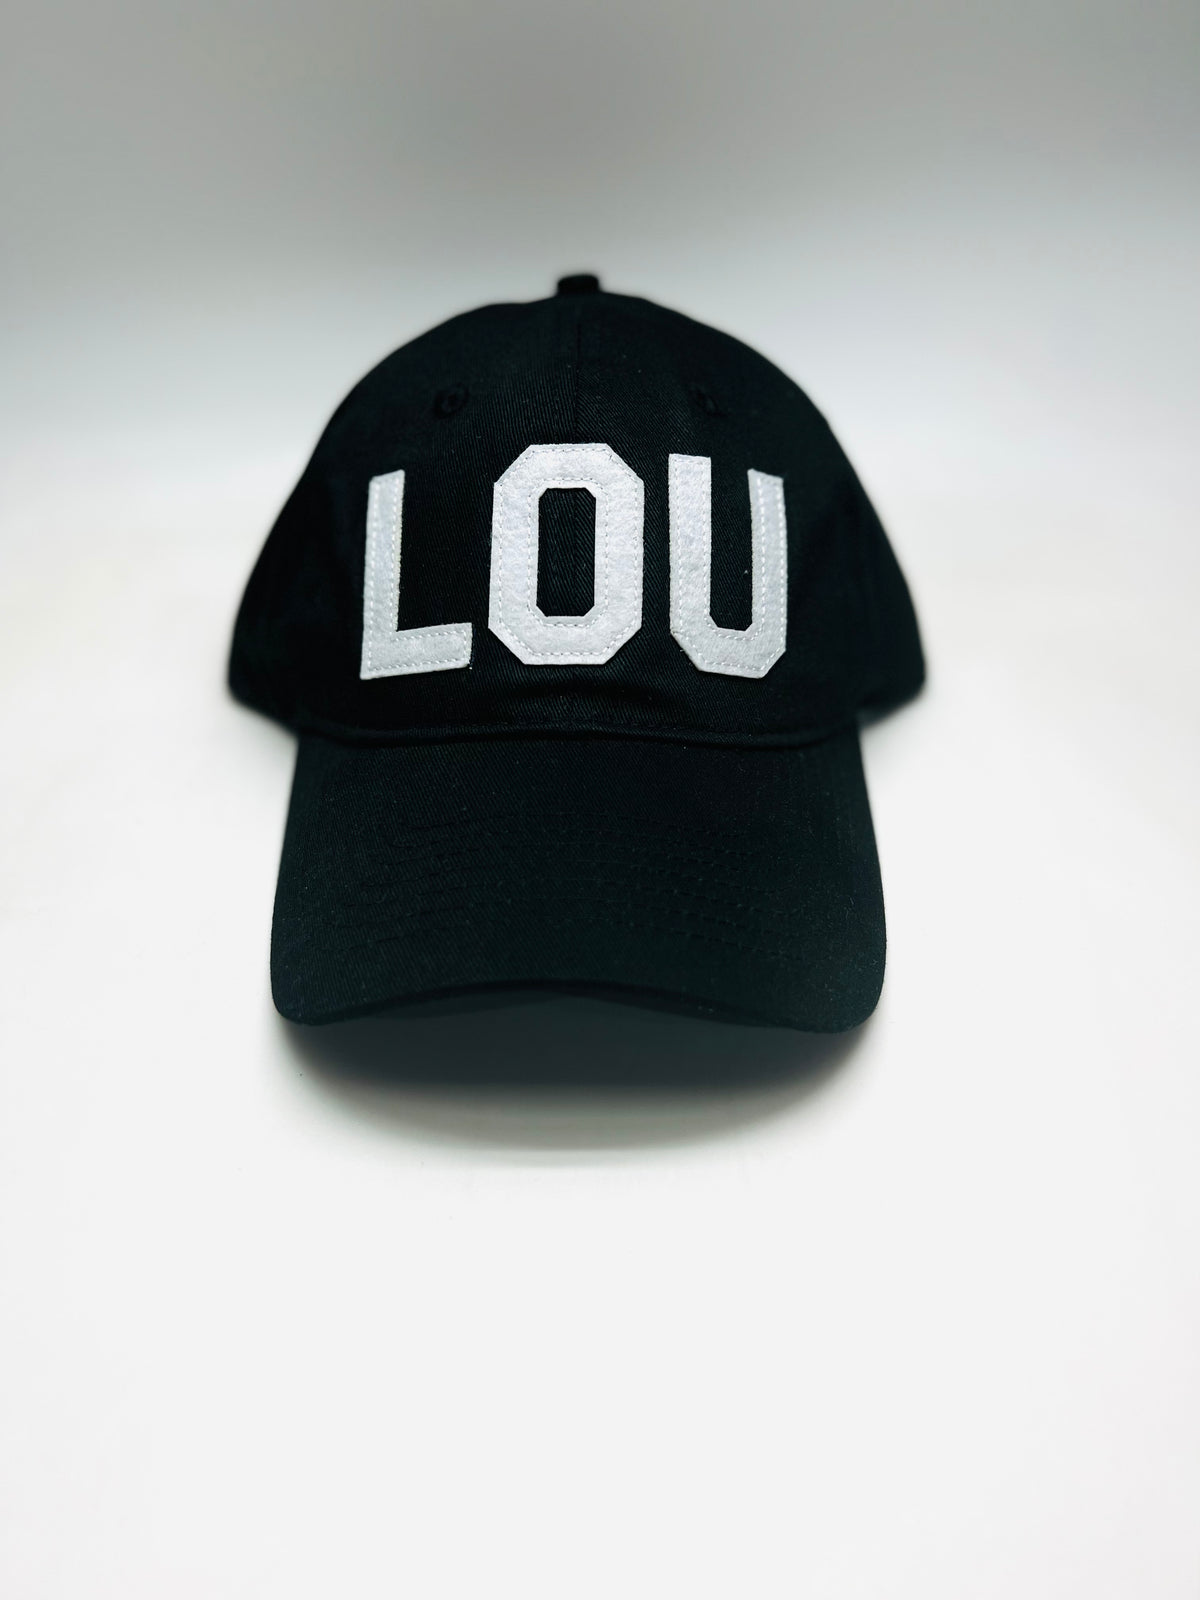 LOU - Louisville, KY Hat